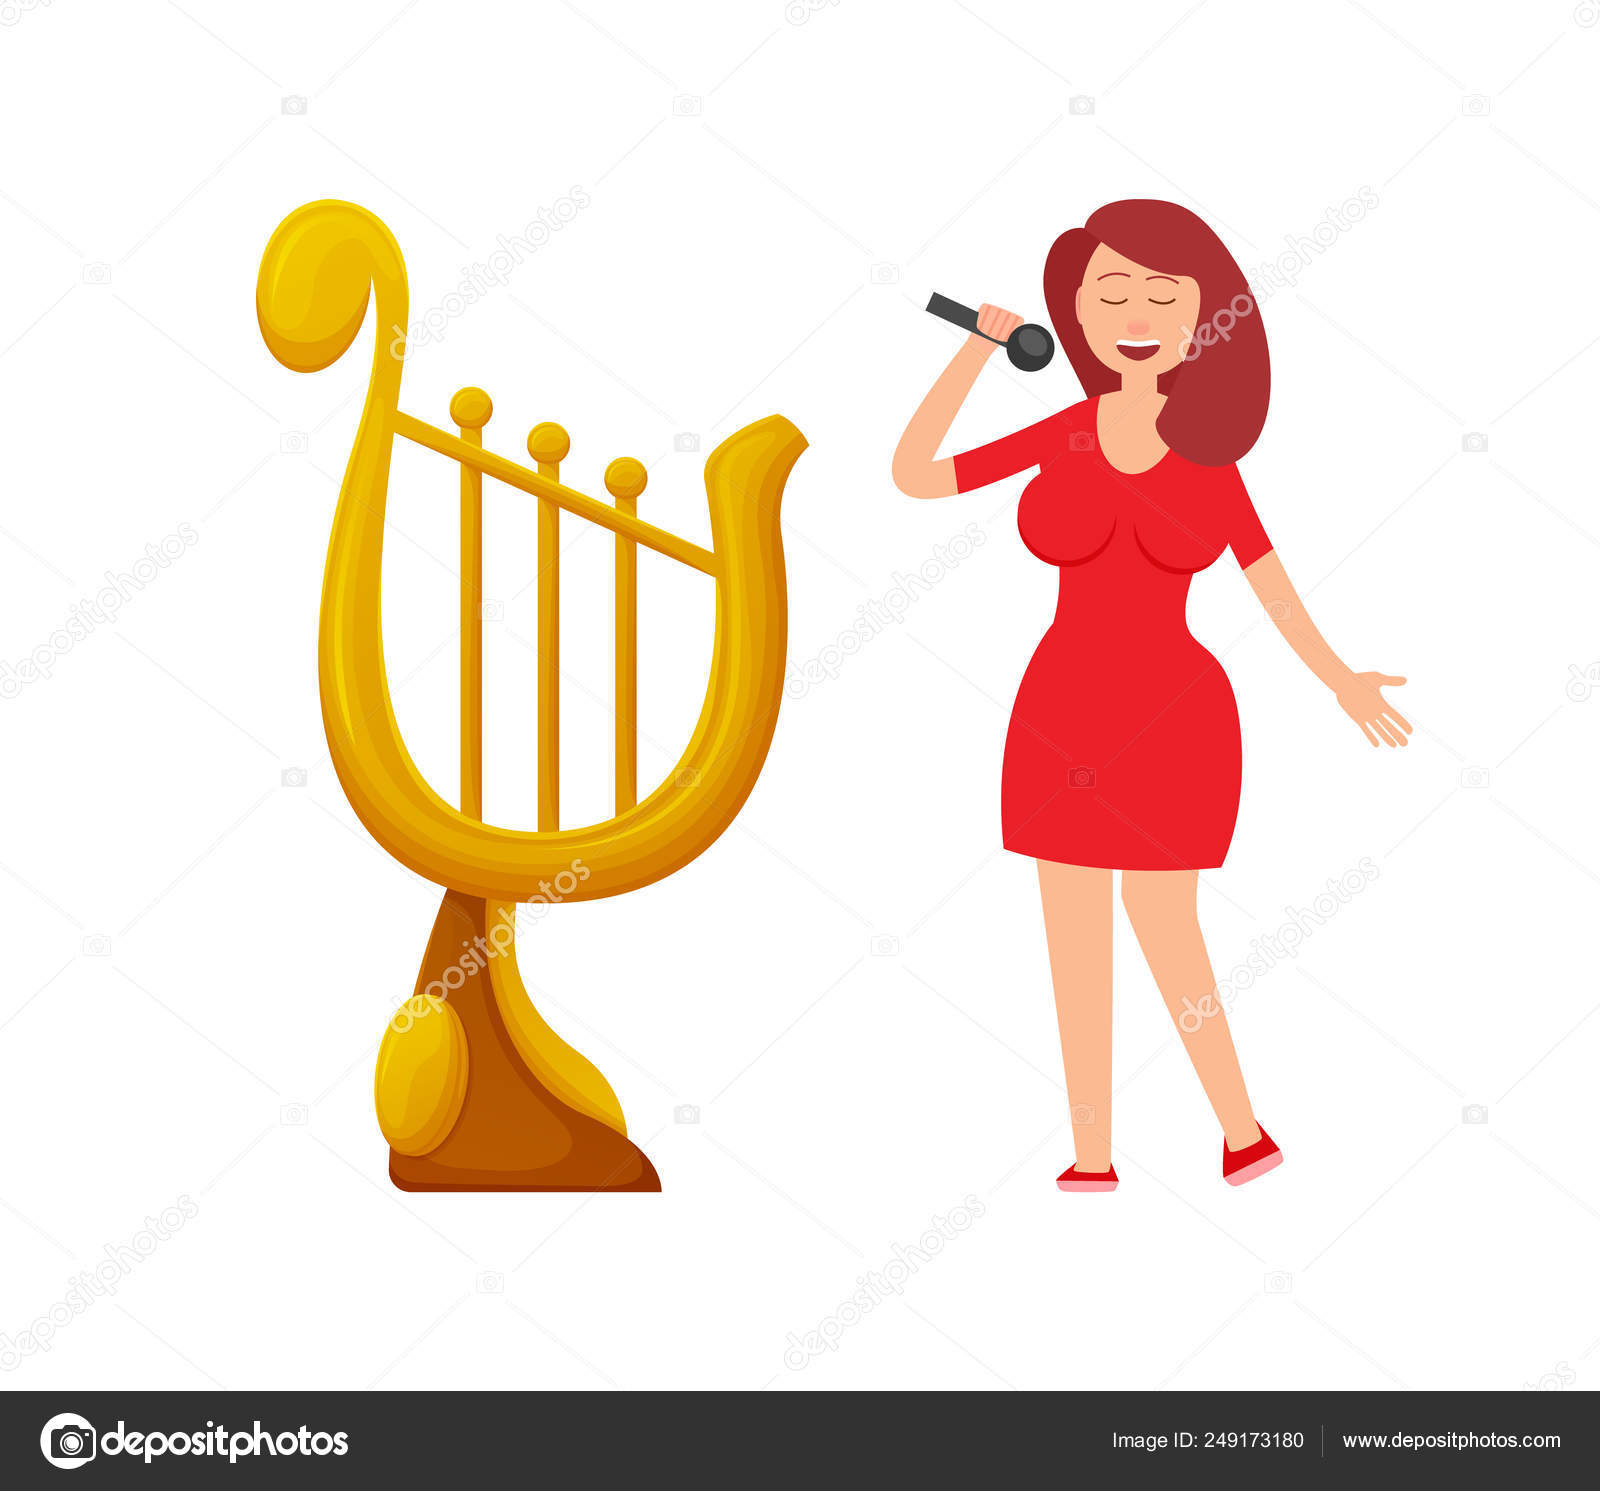 Prêmio de Música em Forma de Harpa, Lady Singer Singing vetor(es) de stock  de ©robuart 249173180